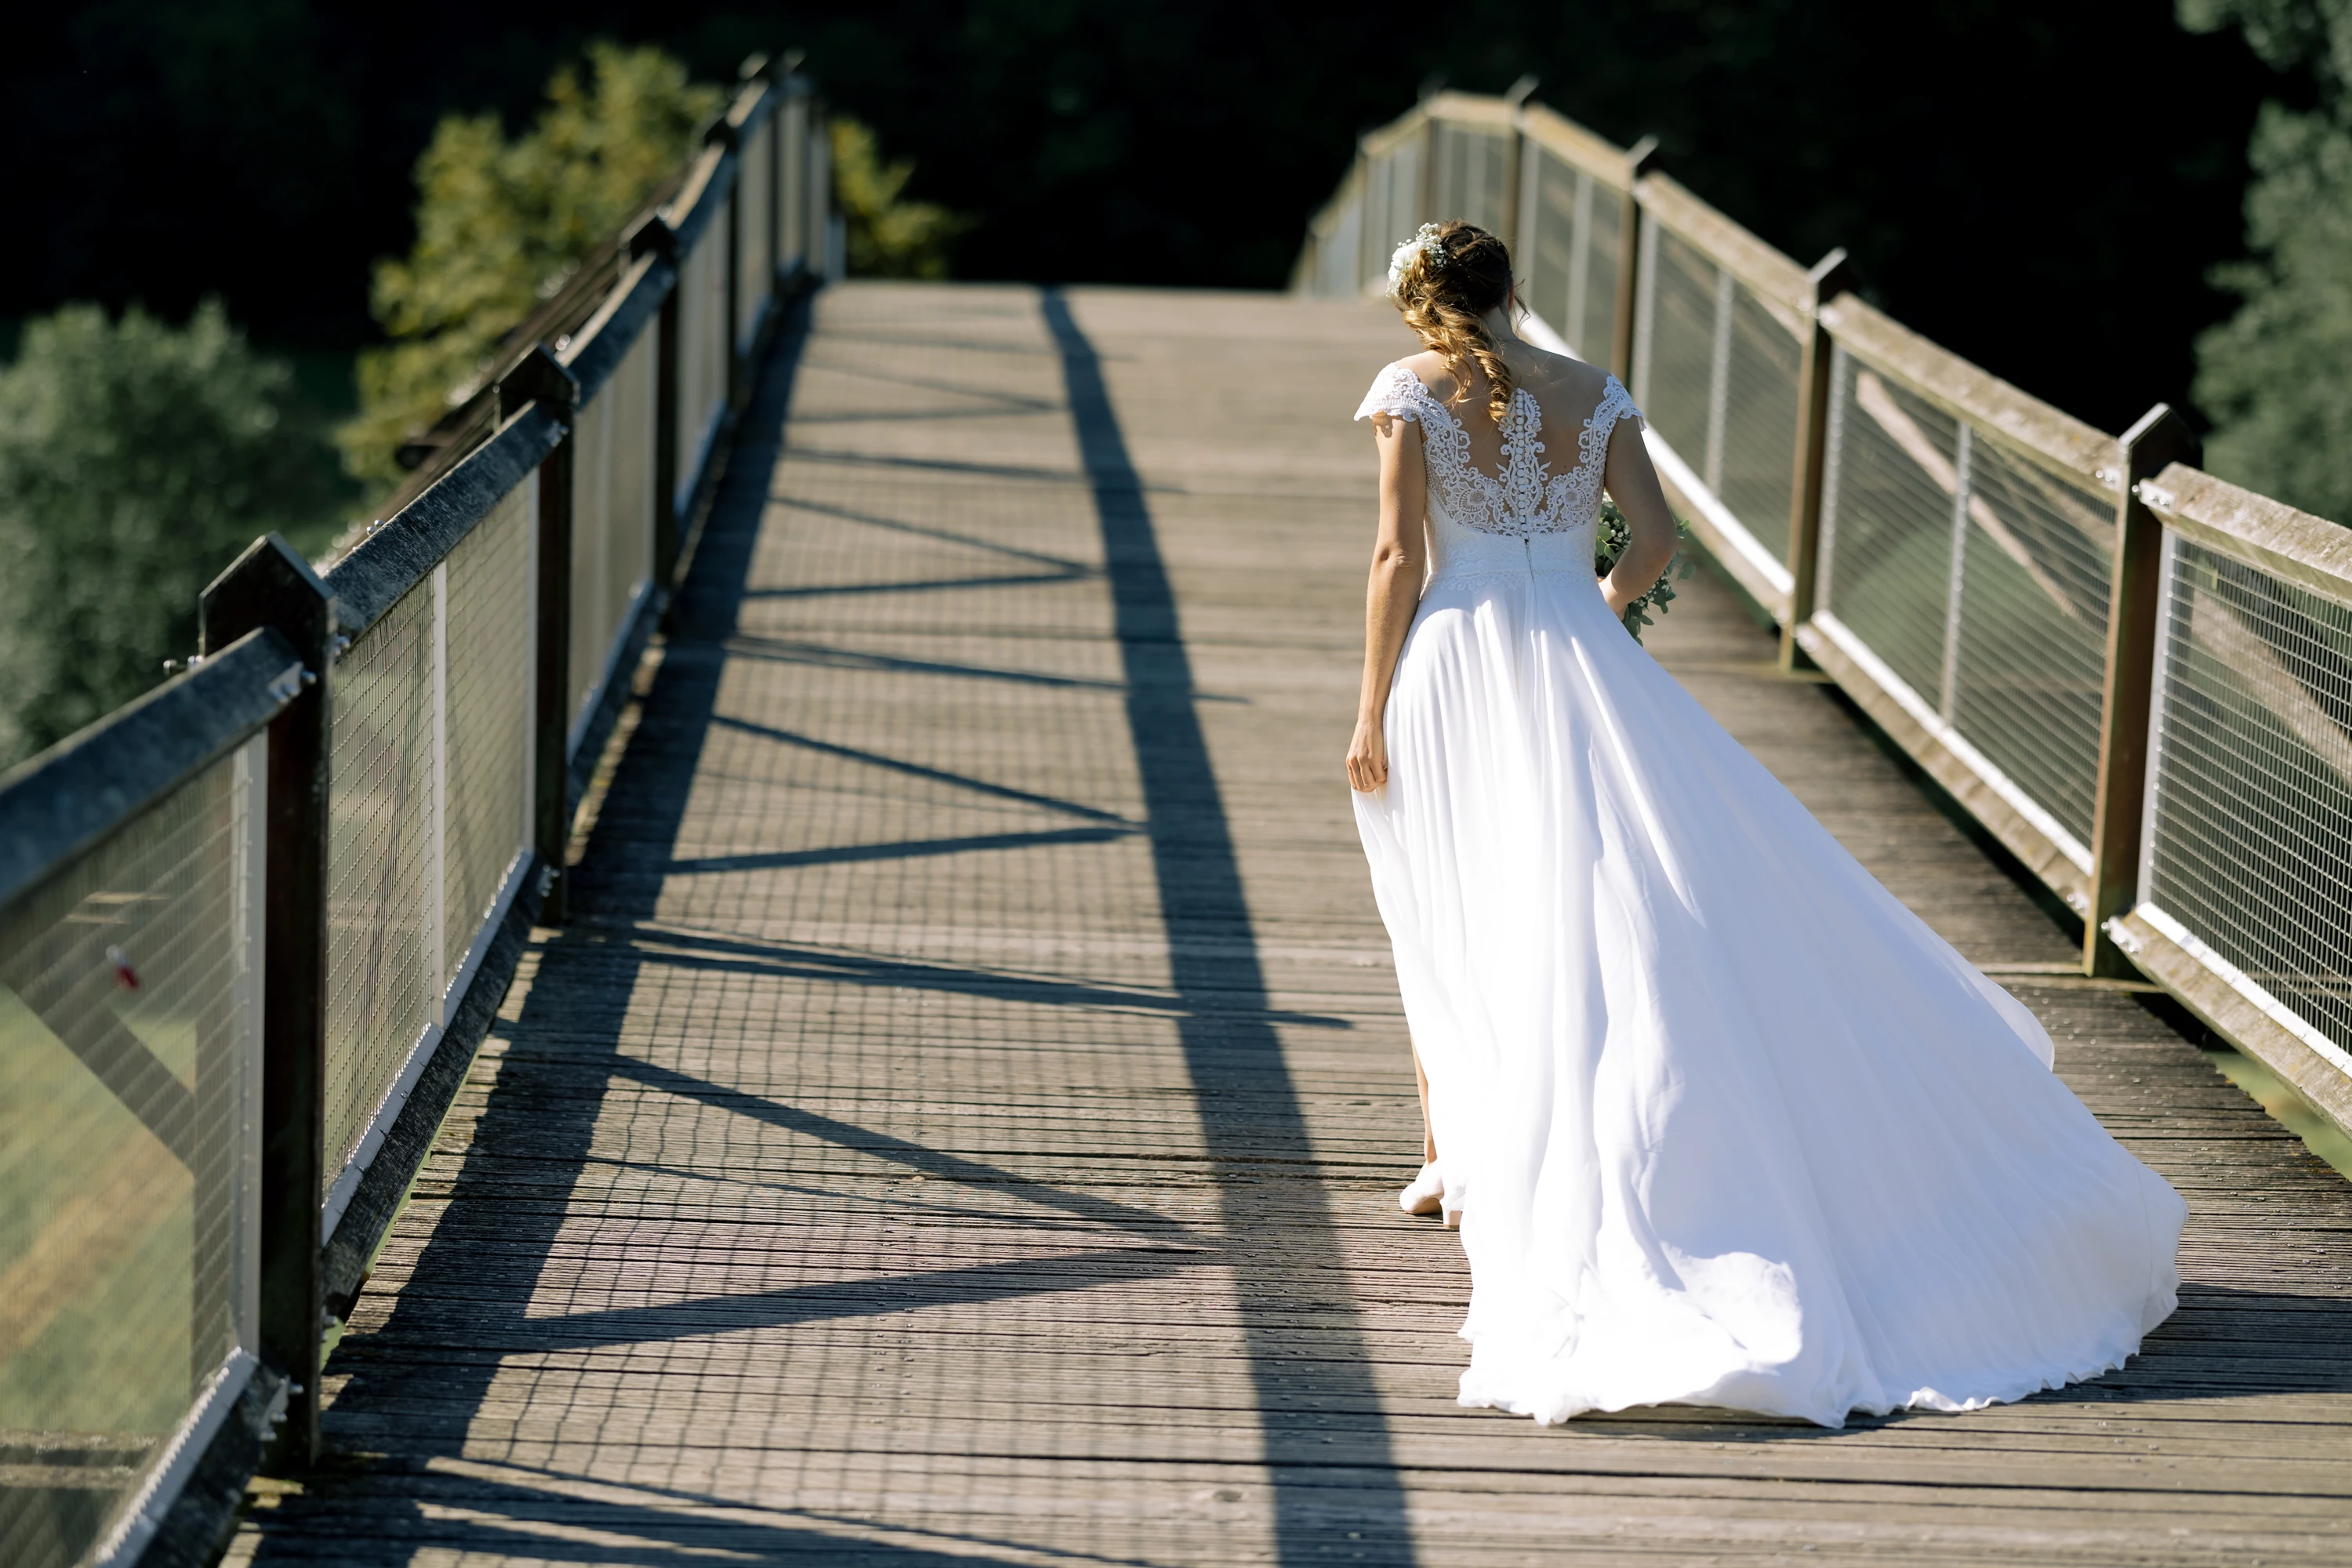 Die Braut geht auf einer Holzbrücke von der Kamera weg, das Kleid wellt sich im Wind.